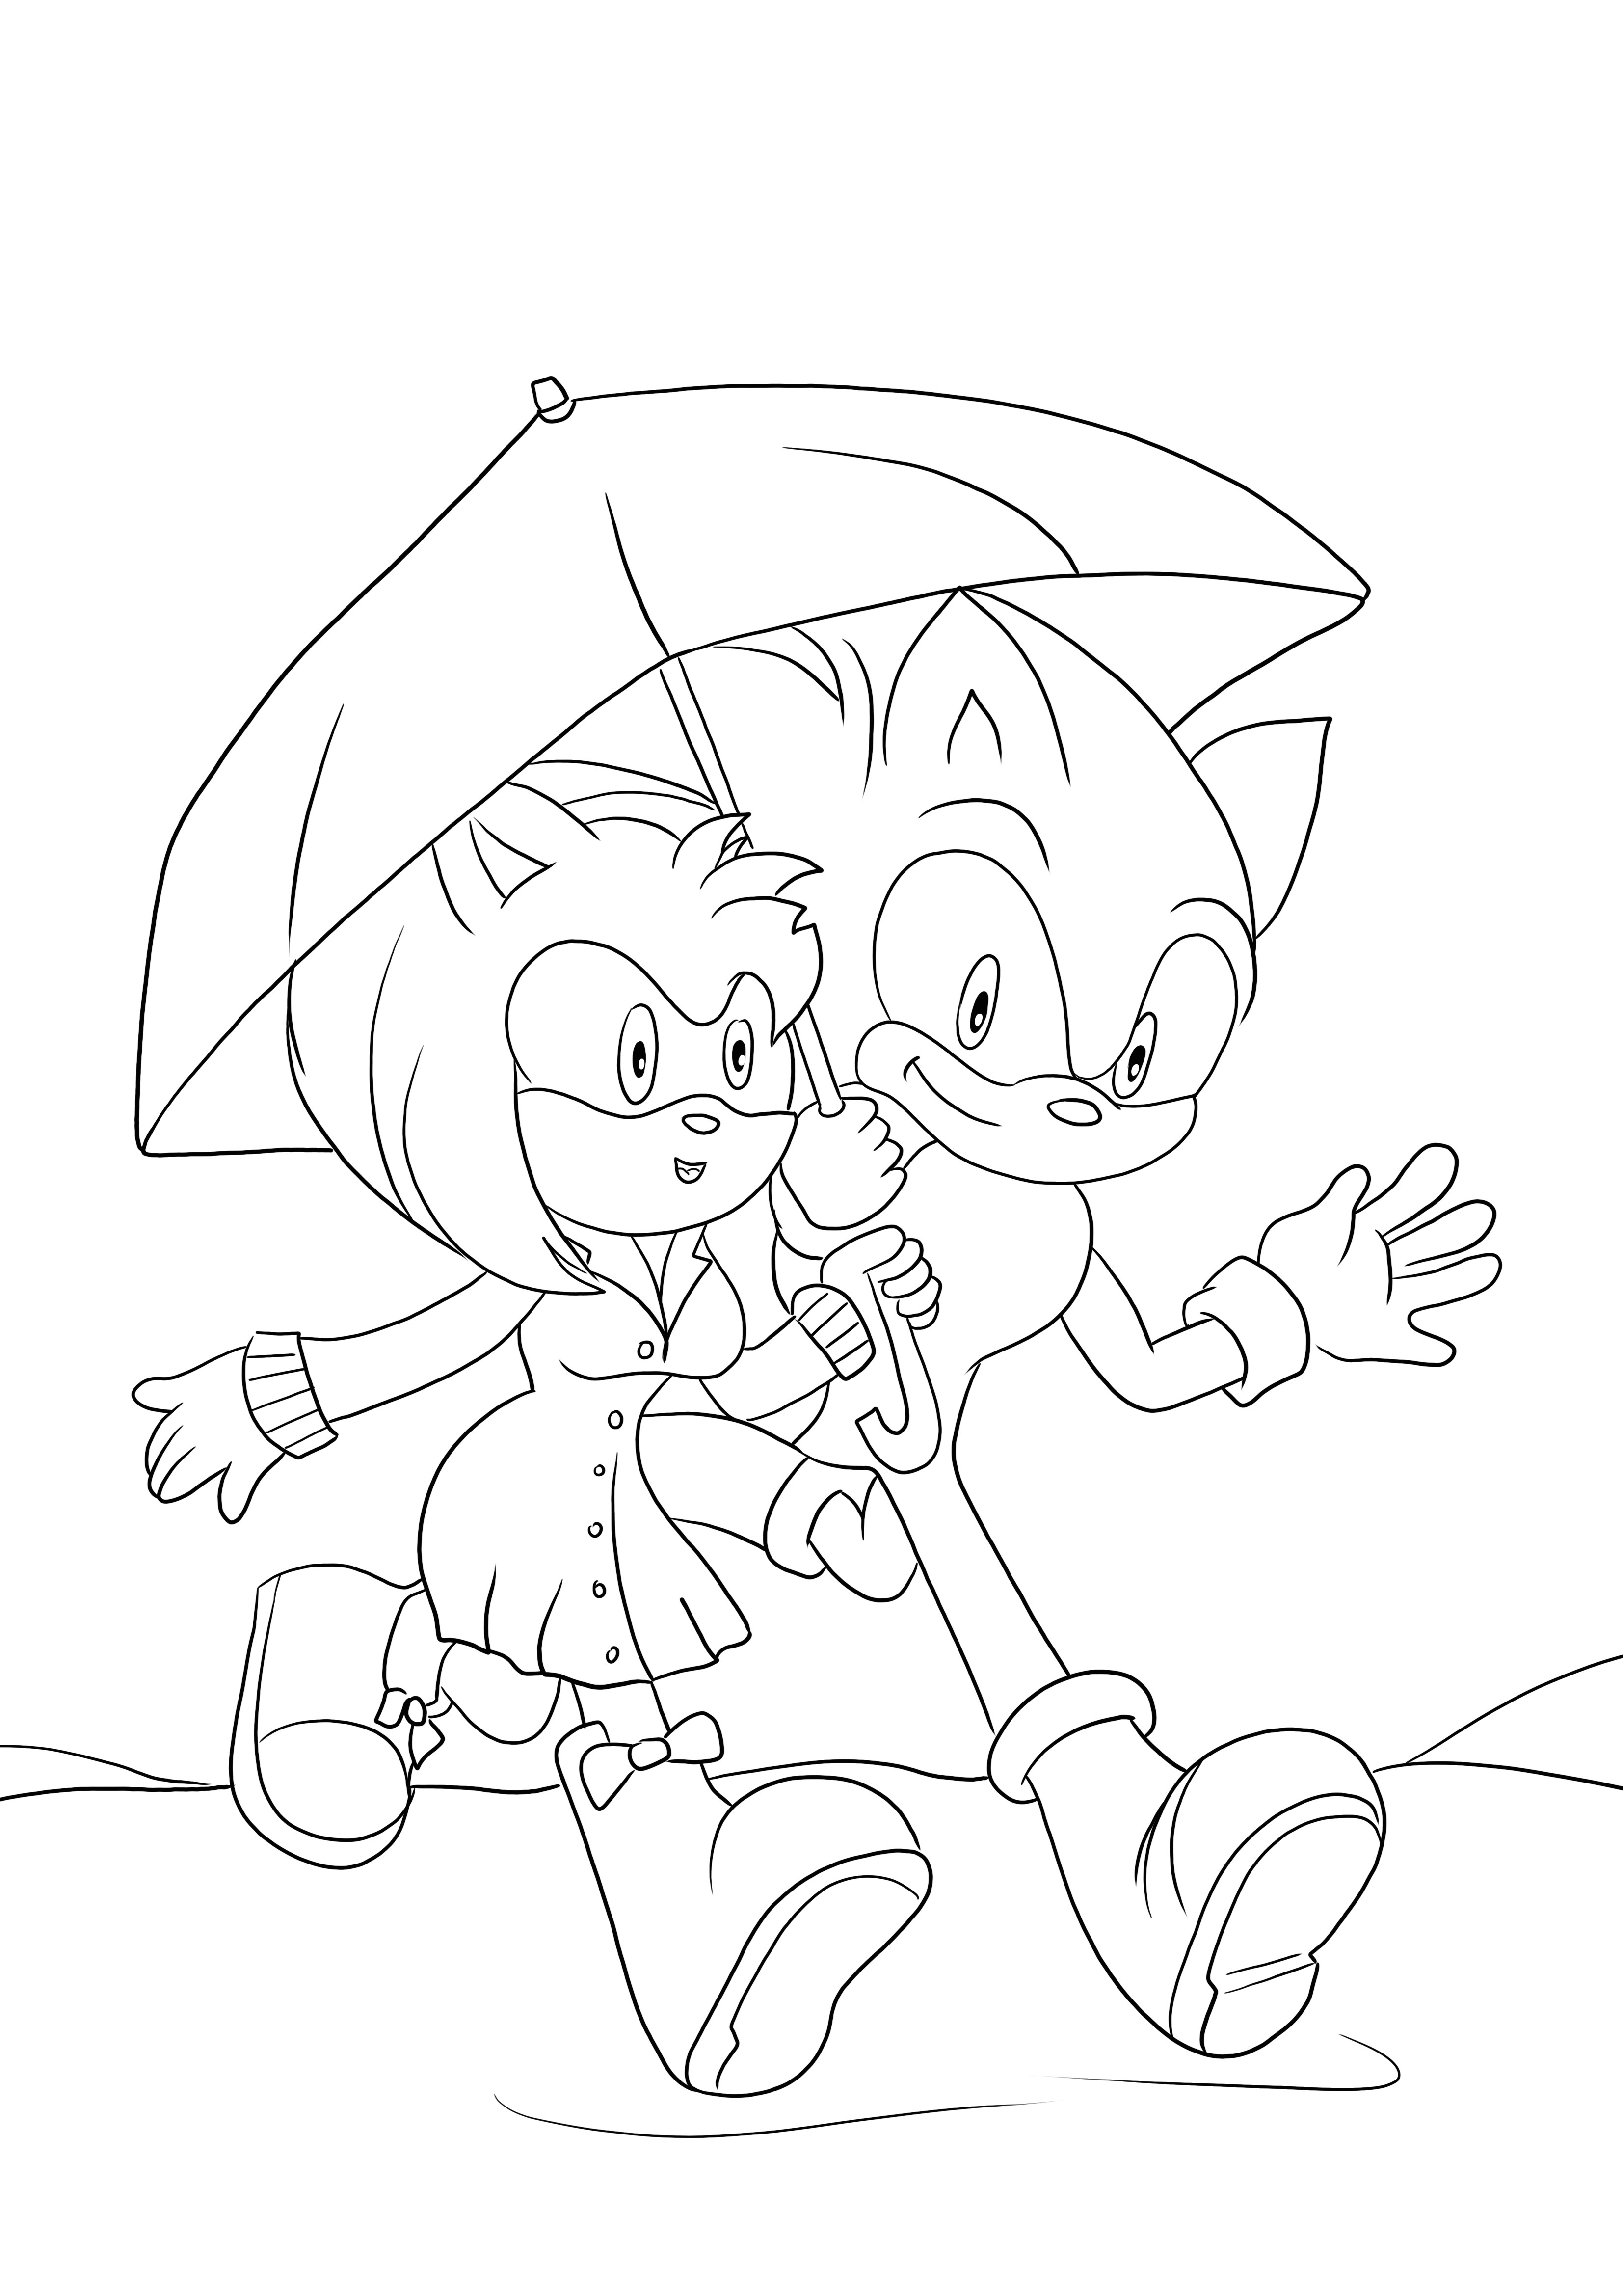 Coloriage et impression gratuits d'Amy Rose et Sonic sous un parapluie pour les enfants